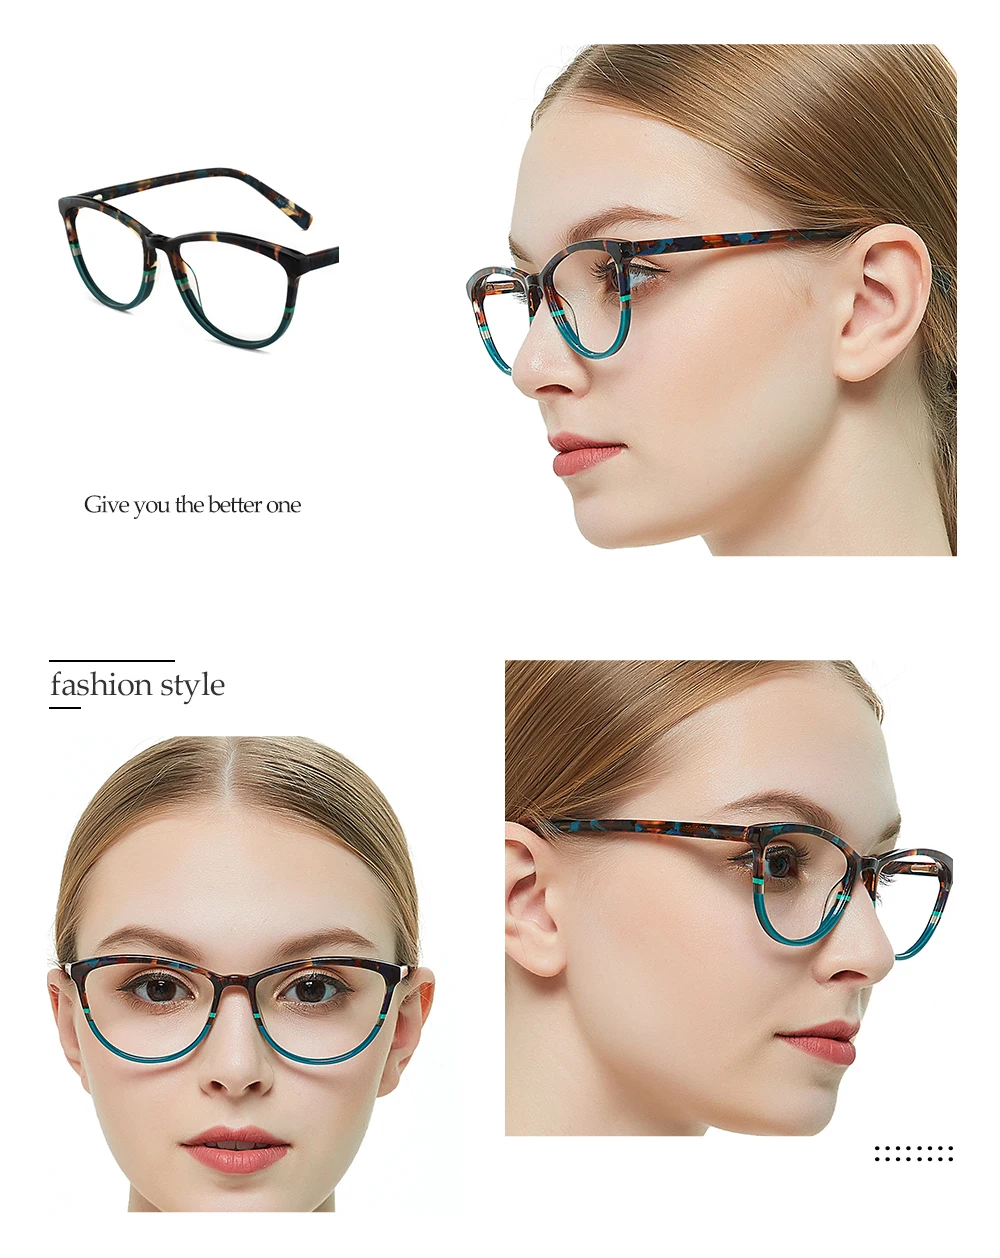 OCCI CHIARI, итальянский дизайн, очки, Женская оправа, очки, оправа, очки, Oculos, люнетты очки, Дэми, цвет, подарок, W-CORSO